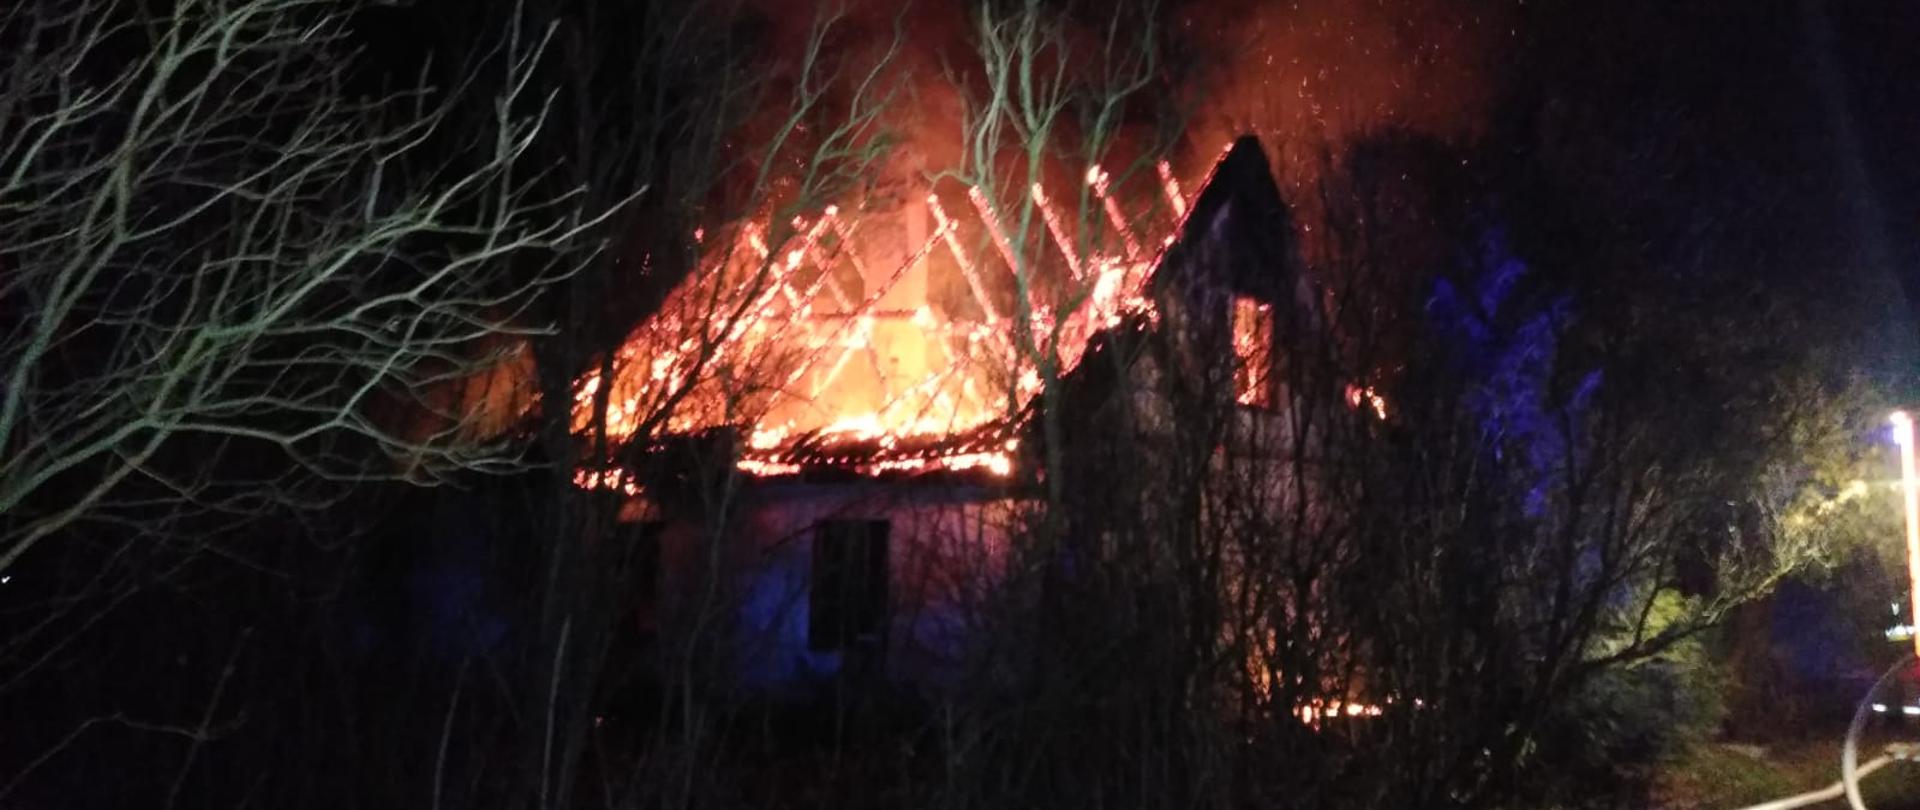 Zdjęcie zrobione nocą. Konstrukcja dachu budynku w ogniu, iskry i płomienie.